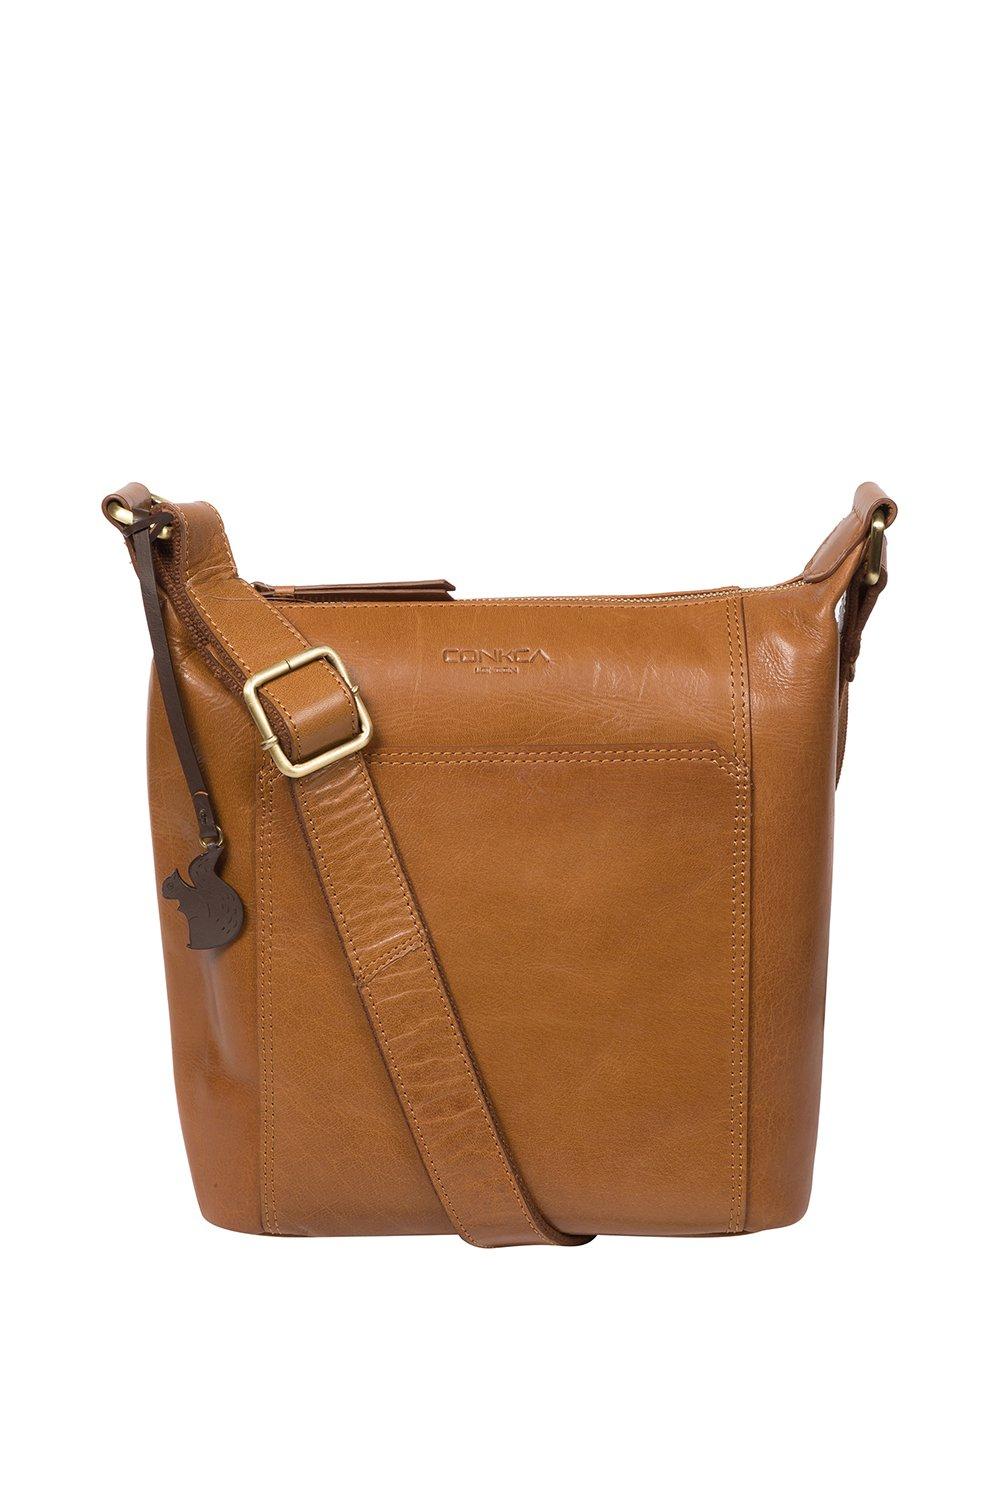 Кожаная сумка через плечо 'Yasmin' Conkca London, коричневый